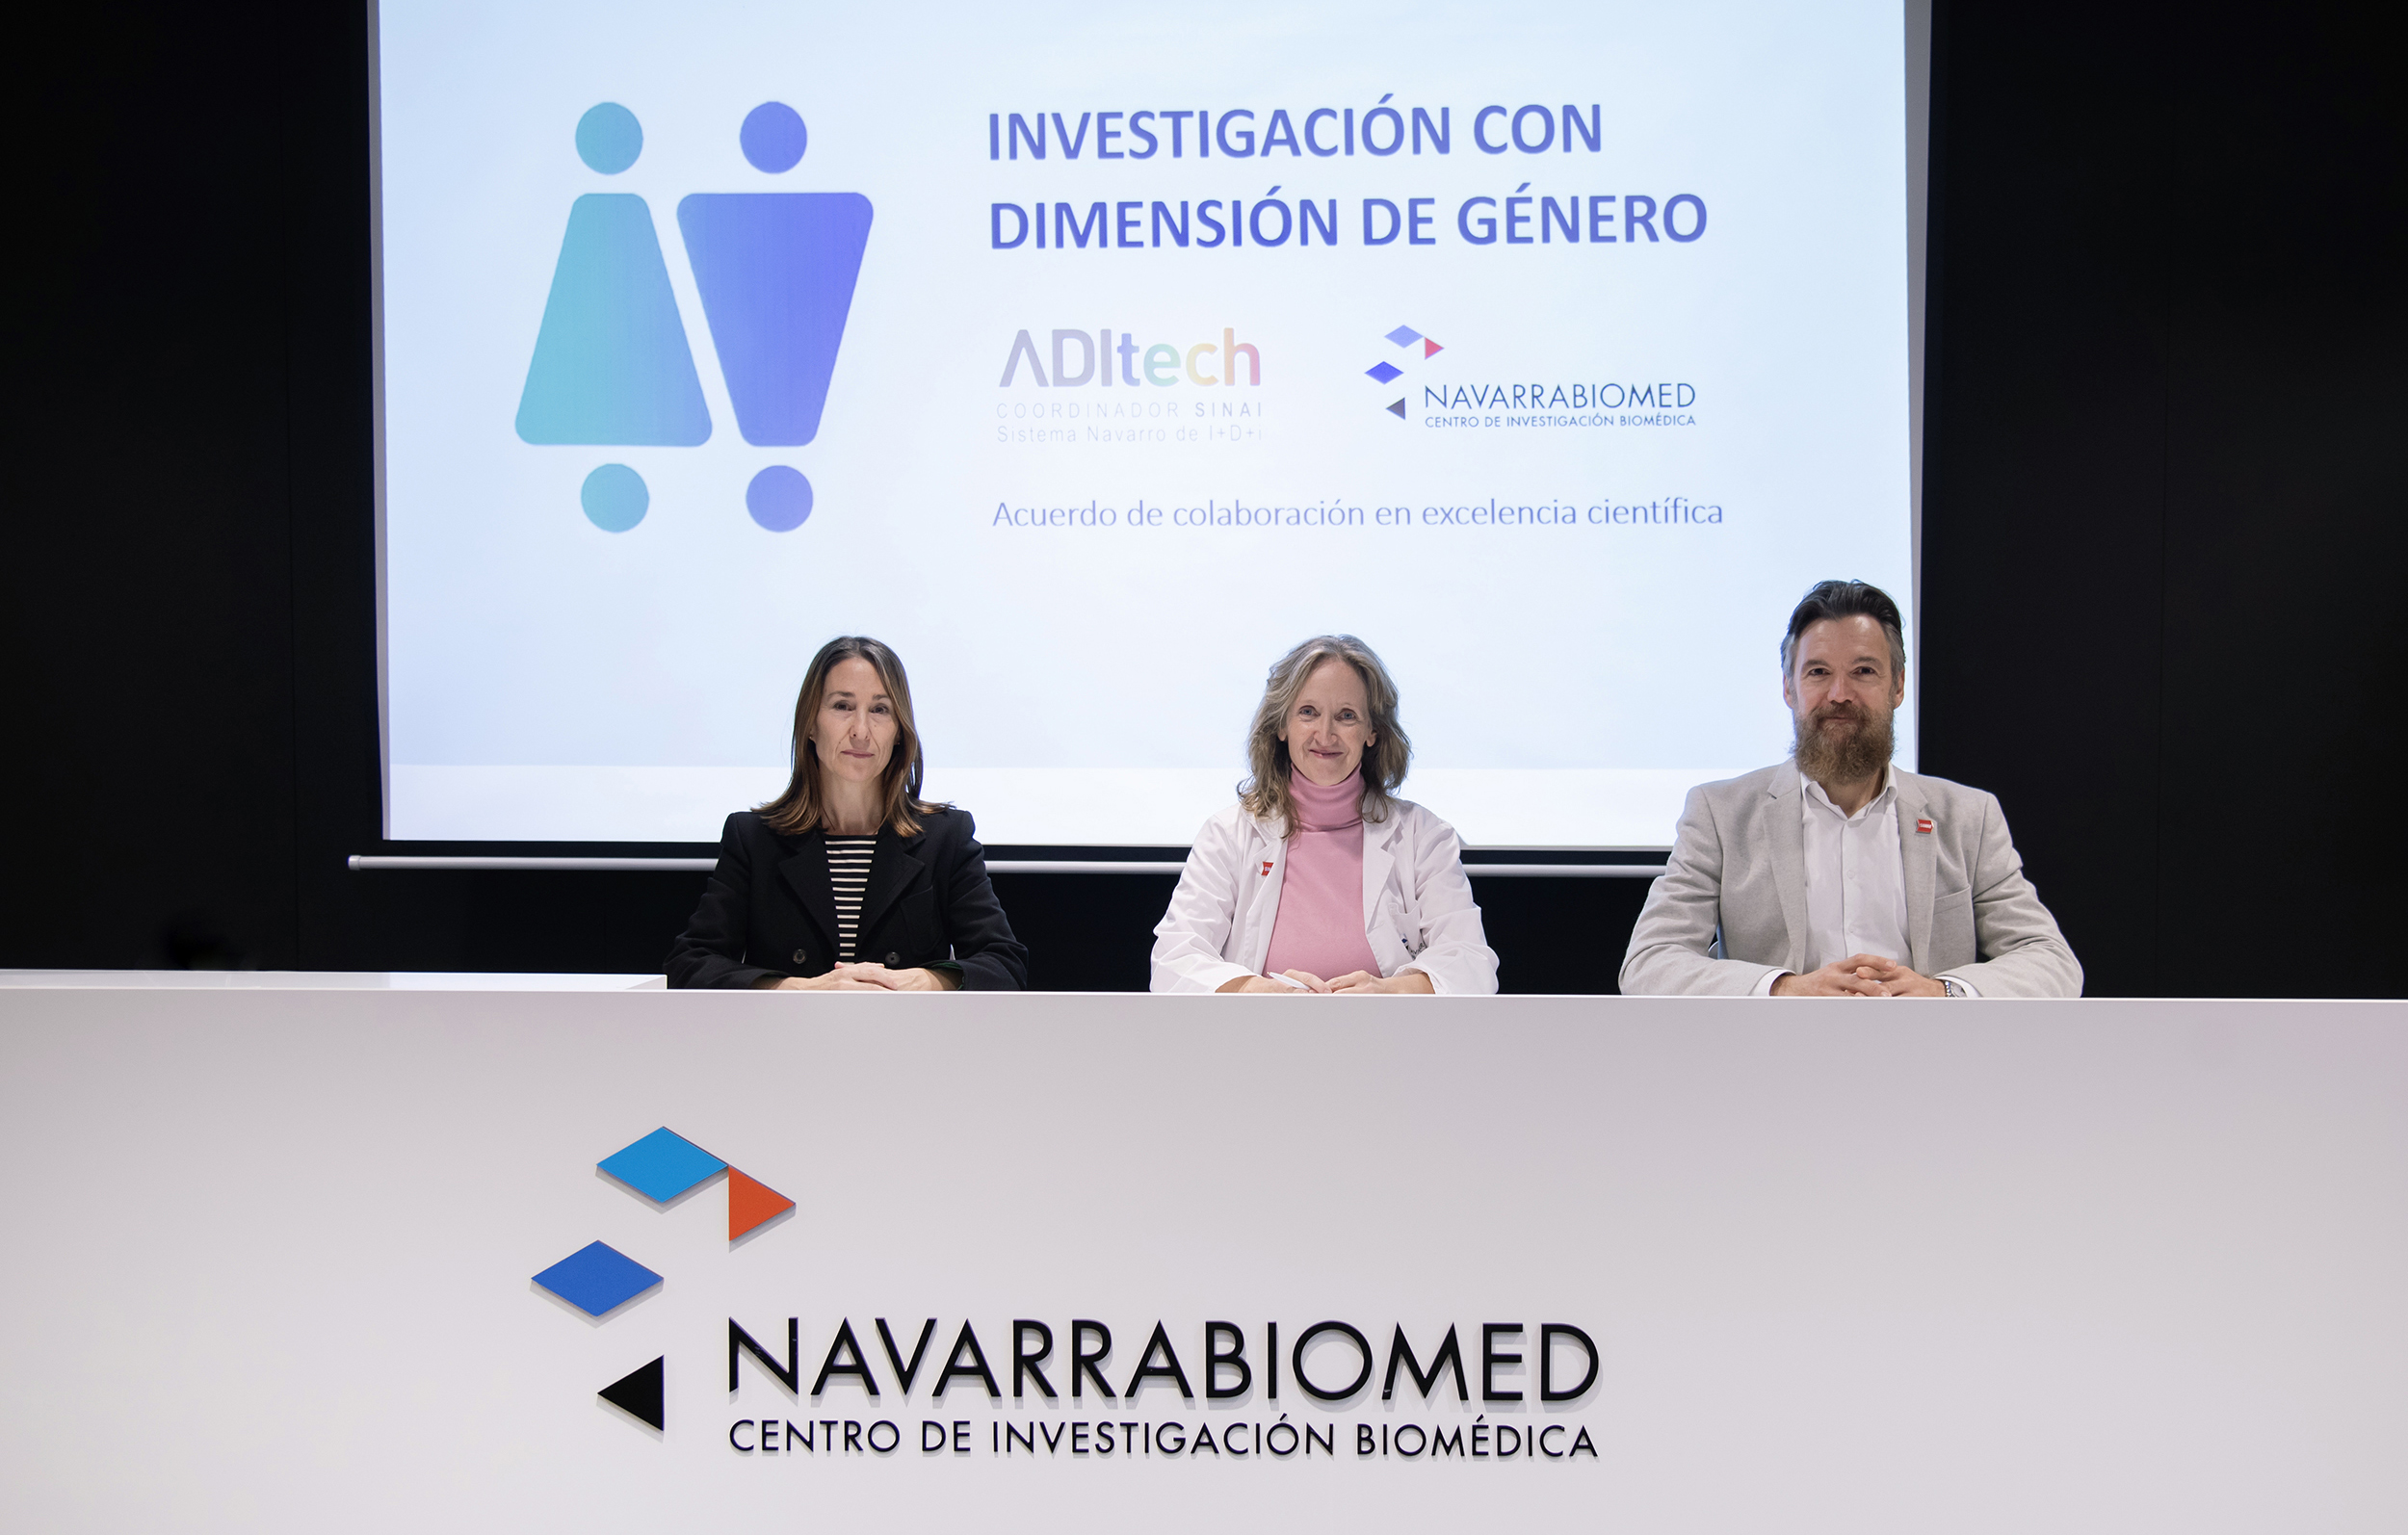 Imagen del artículo Navarrabiomed y ADItech se alían para potenciar la investigación biomédica con dimensión de género y alcanzar la excelencia científica